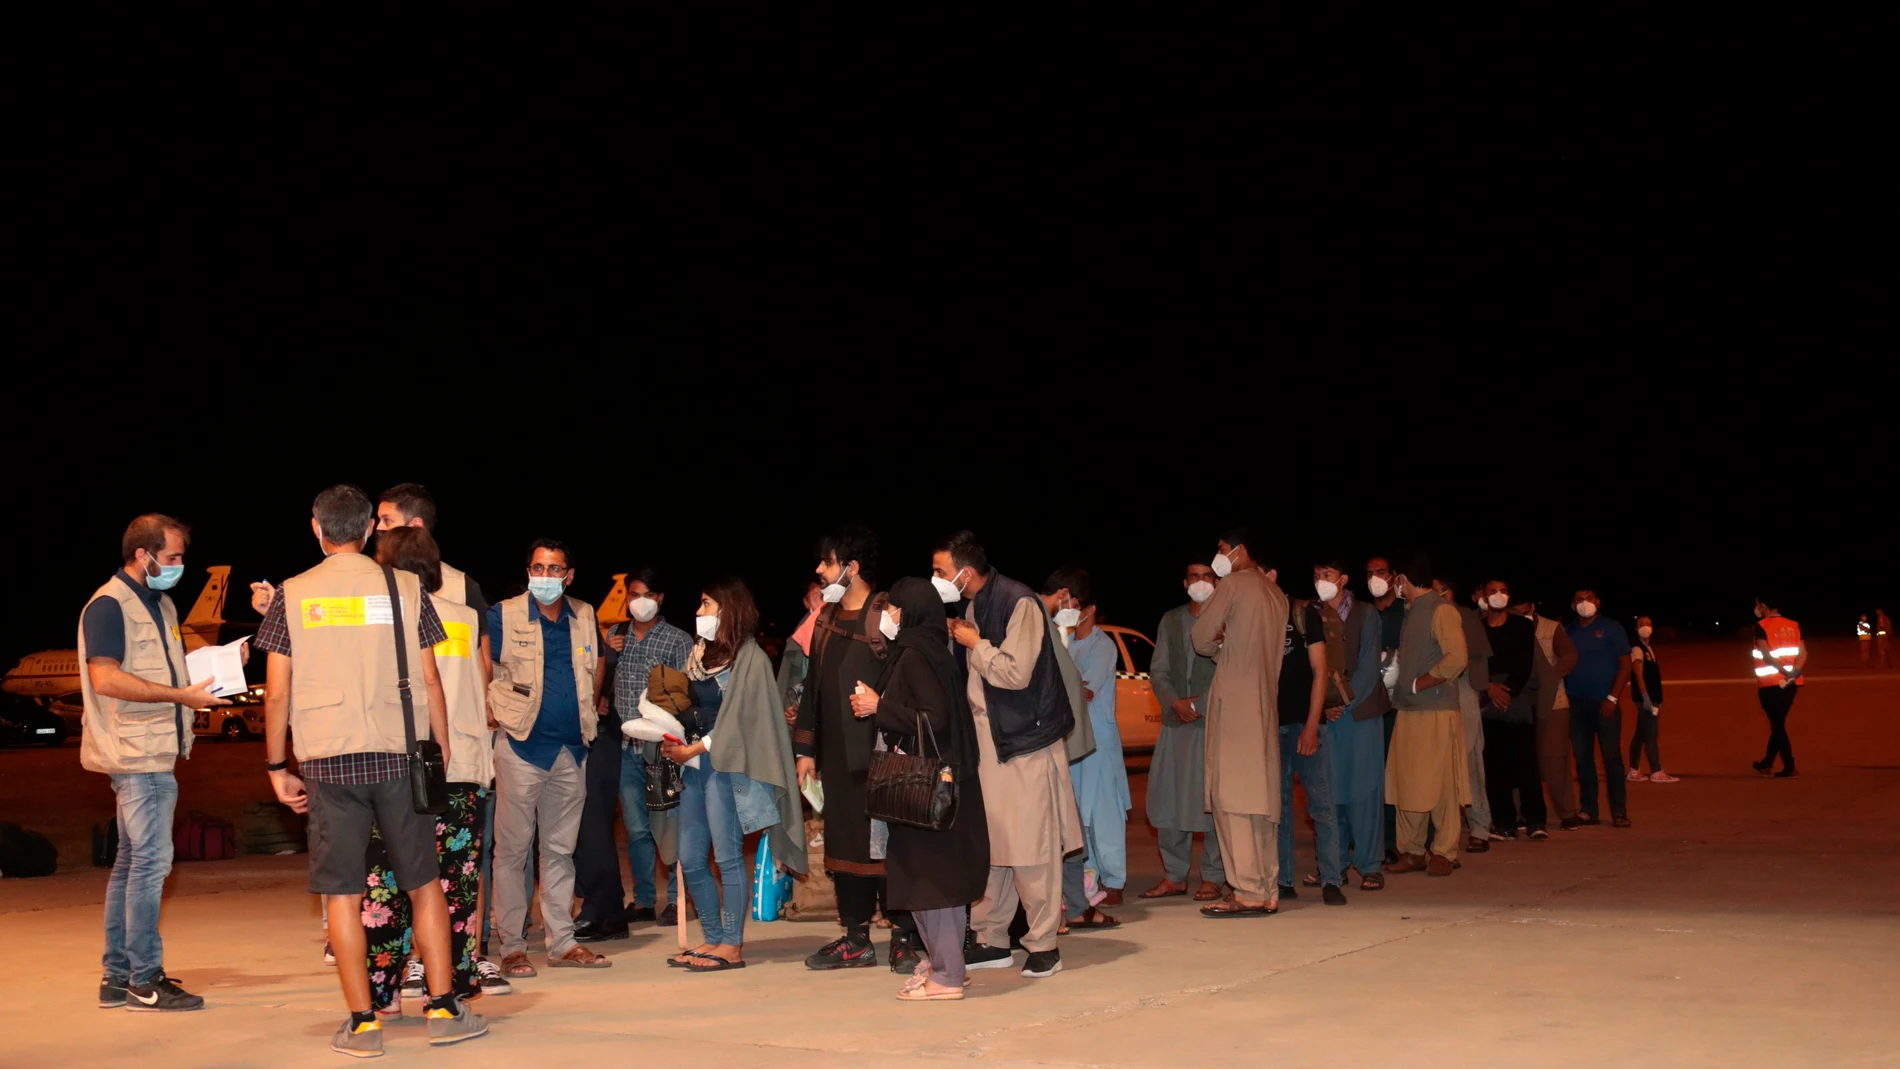 Un tercer avión español con 110 personas evacuadas de Afganistán